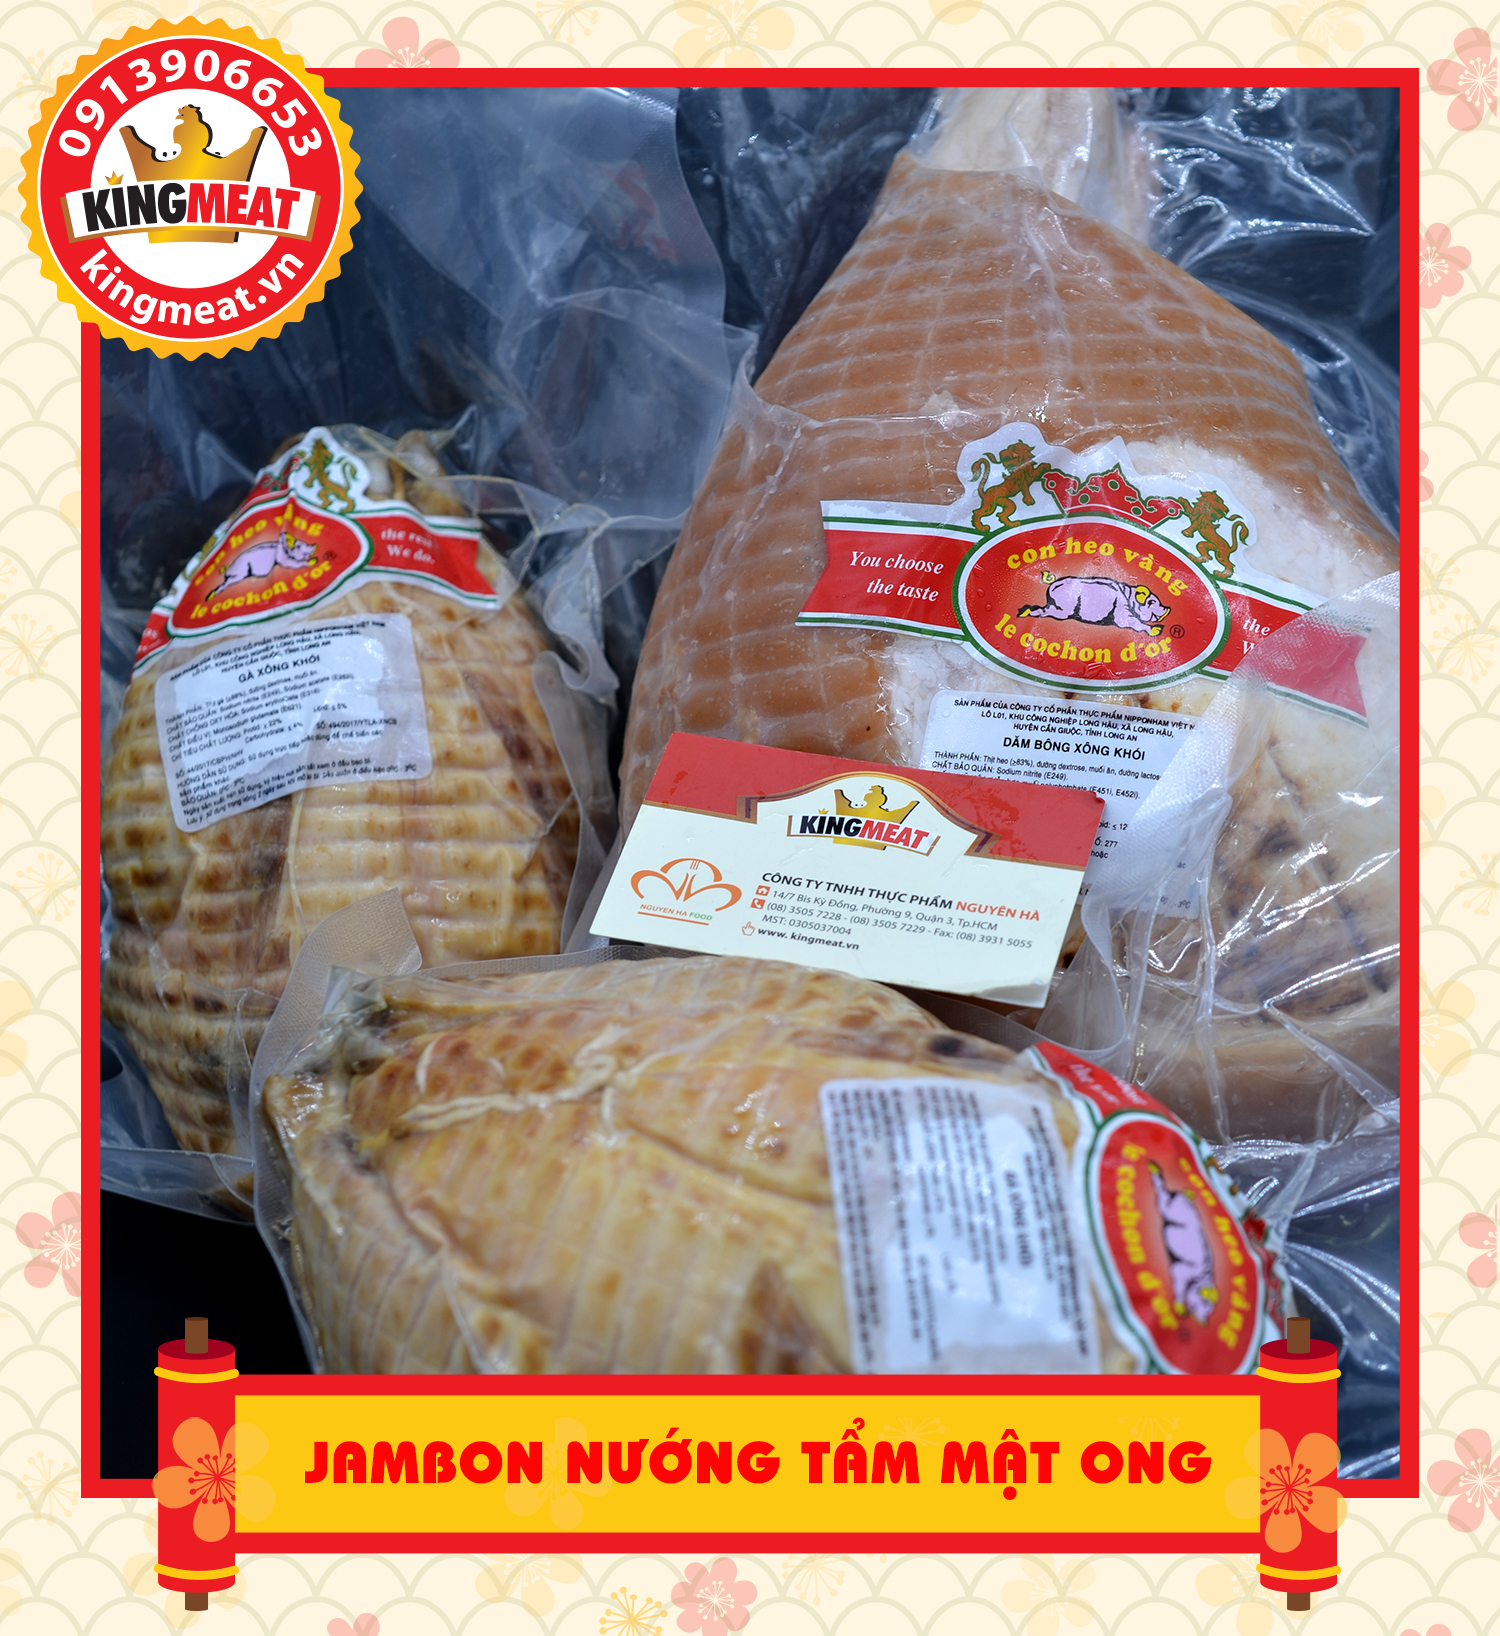 Jambon-nuong-tam-mat-ong